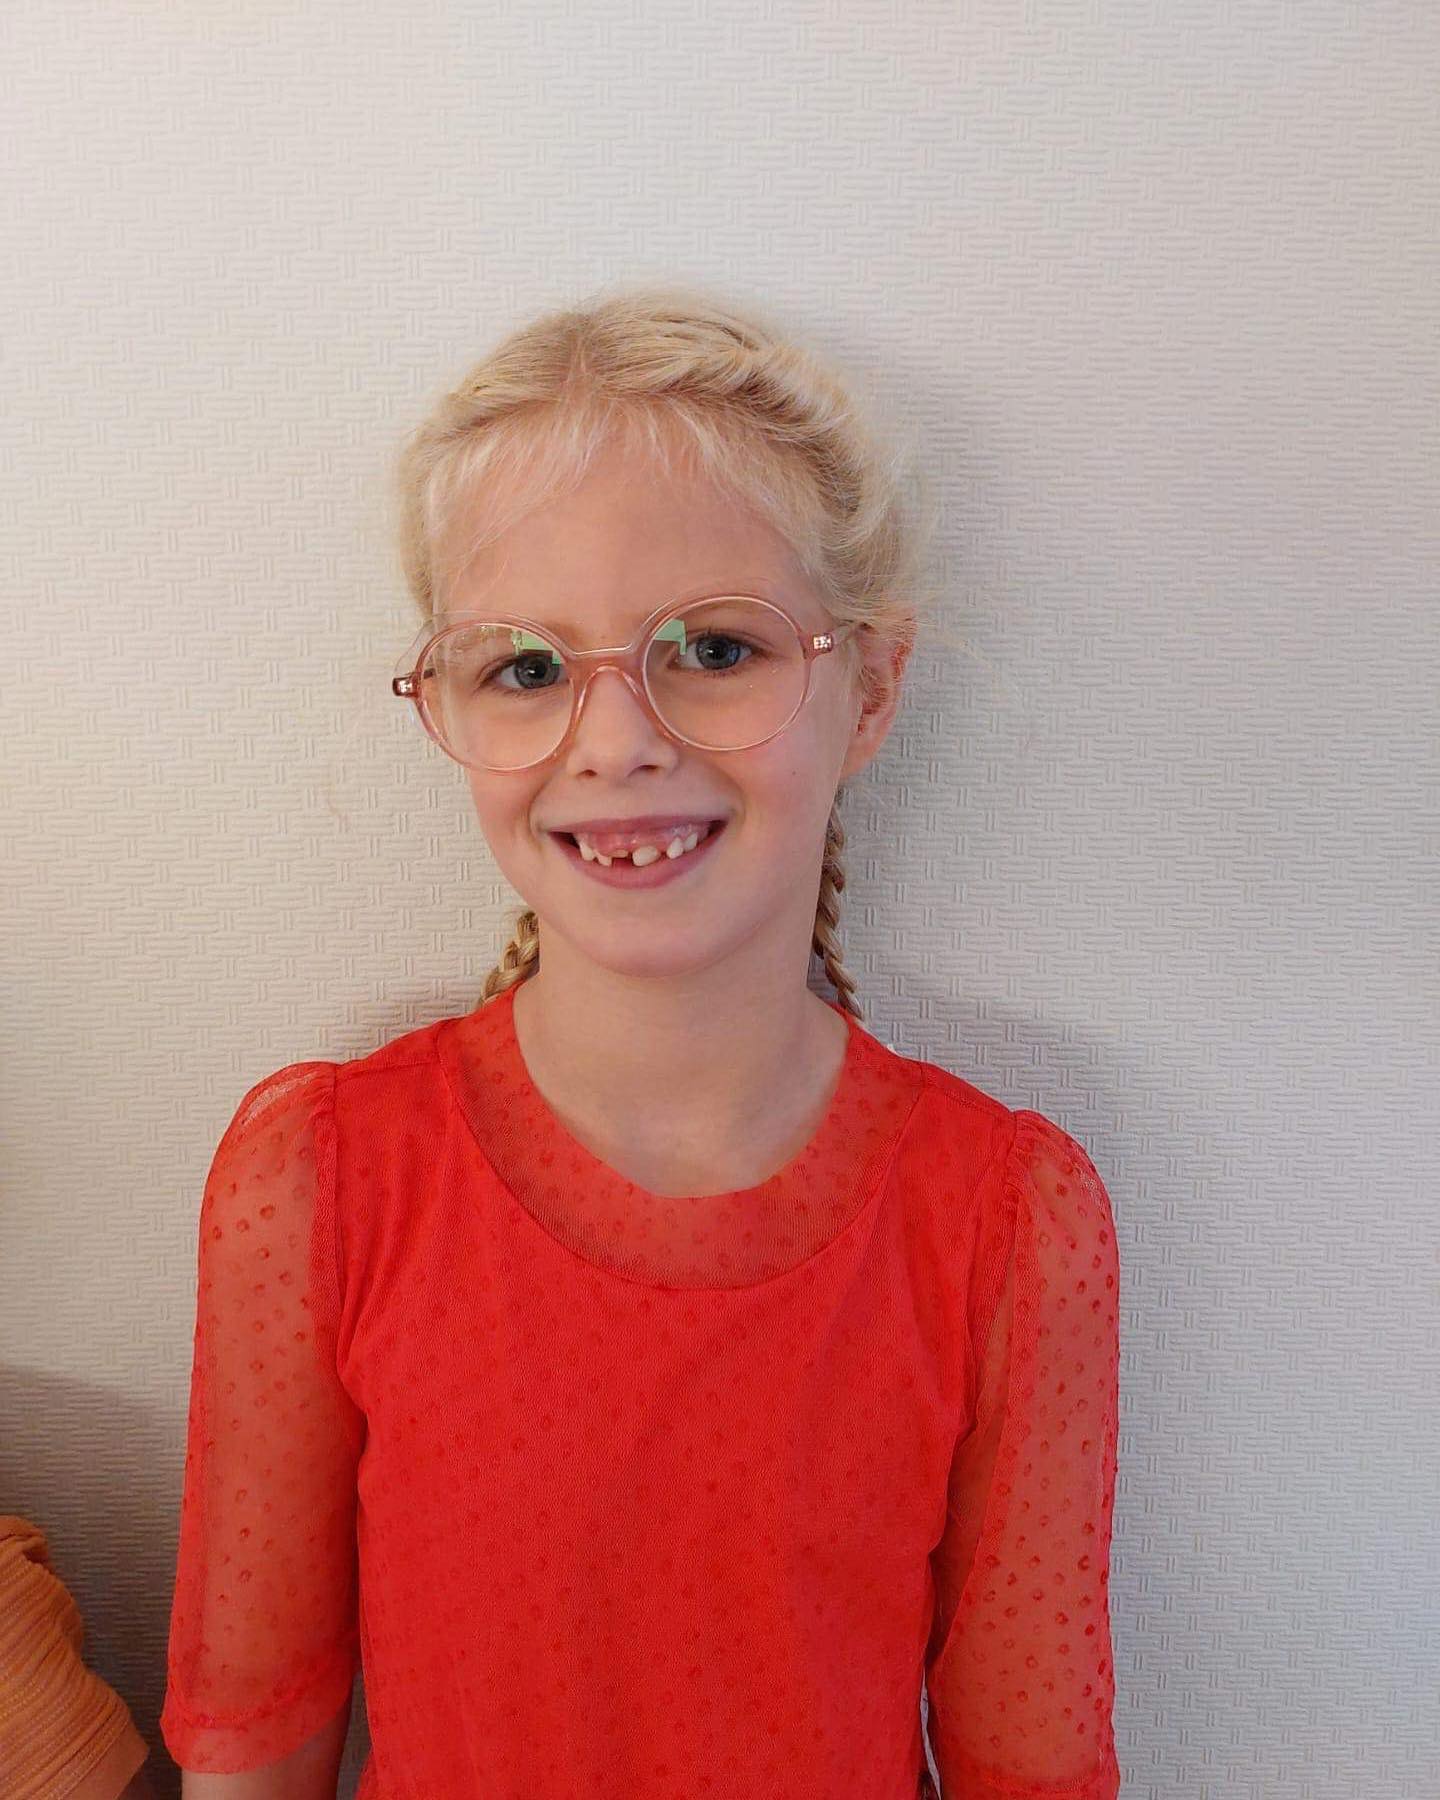 Gwen is het schooljaar goed gestart met haar nieuwe bril 🤓 💕

#optiekkarine #dressyoureyes #heusdenzolder #opticien #optometrist #kinderbrillen